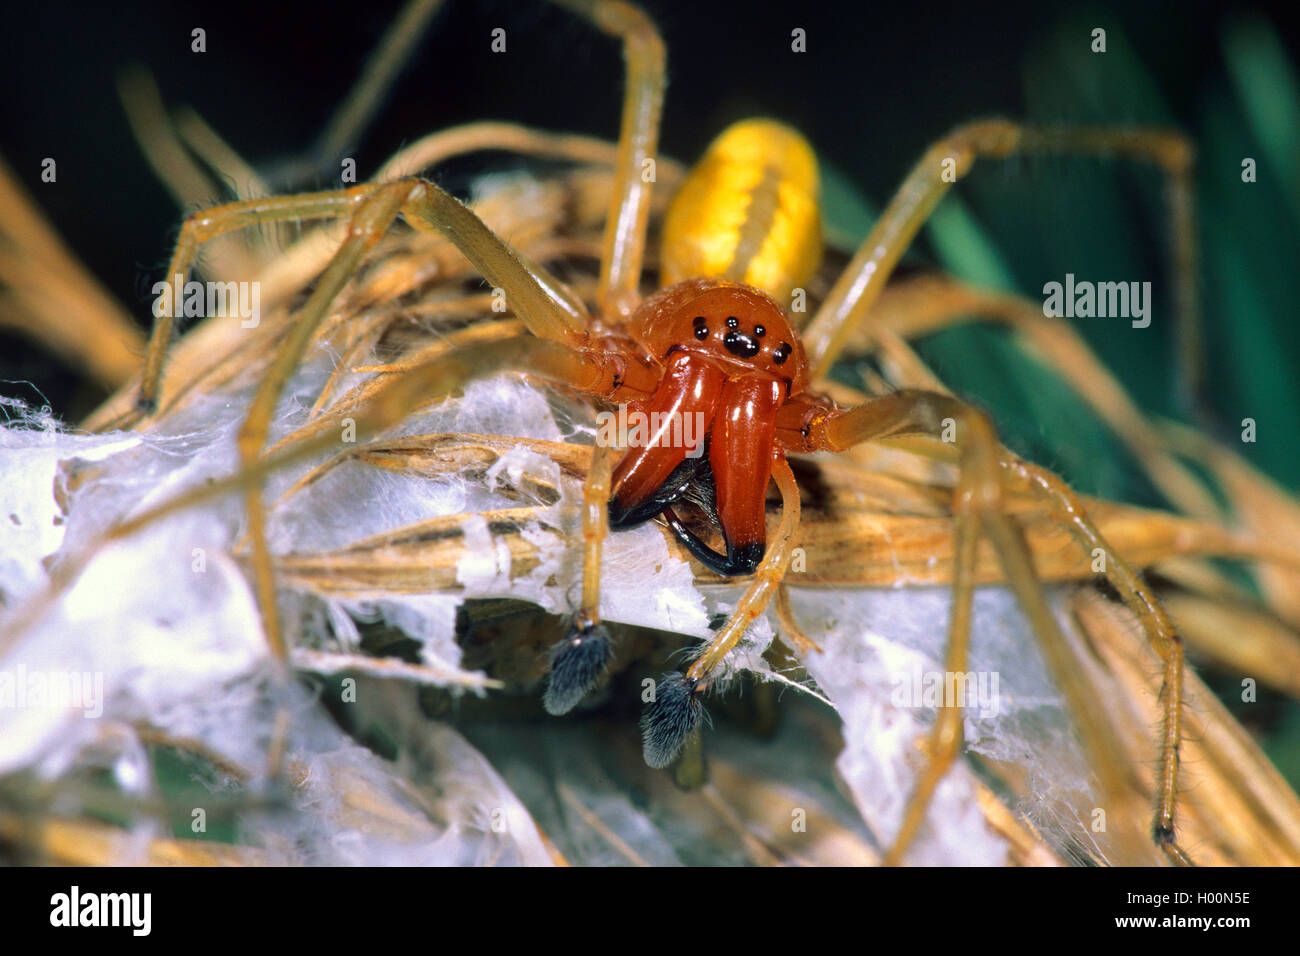 European sac spider (Cheiracanthium punctorium), male, Austria Stock Photo